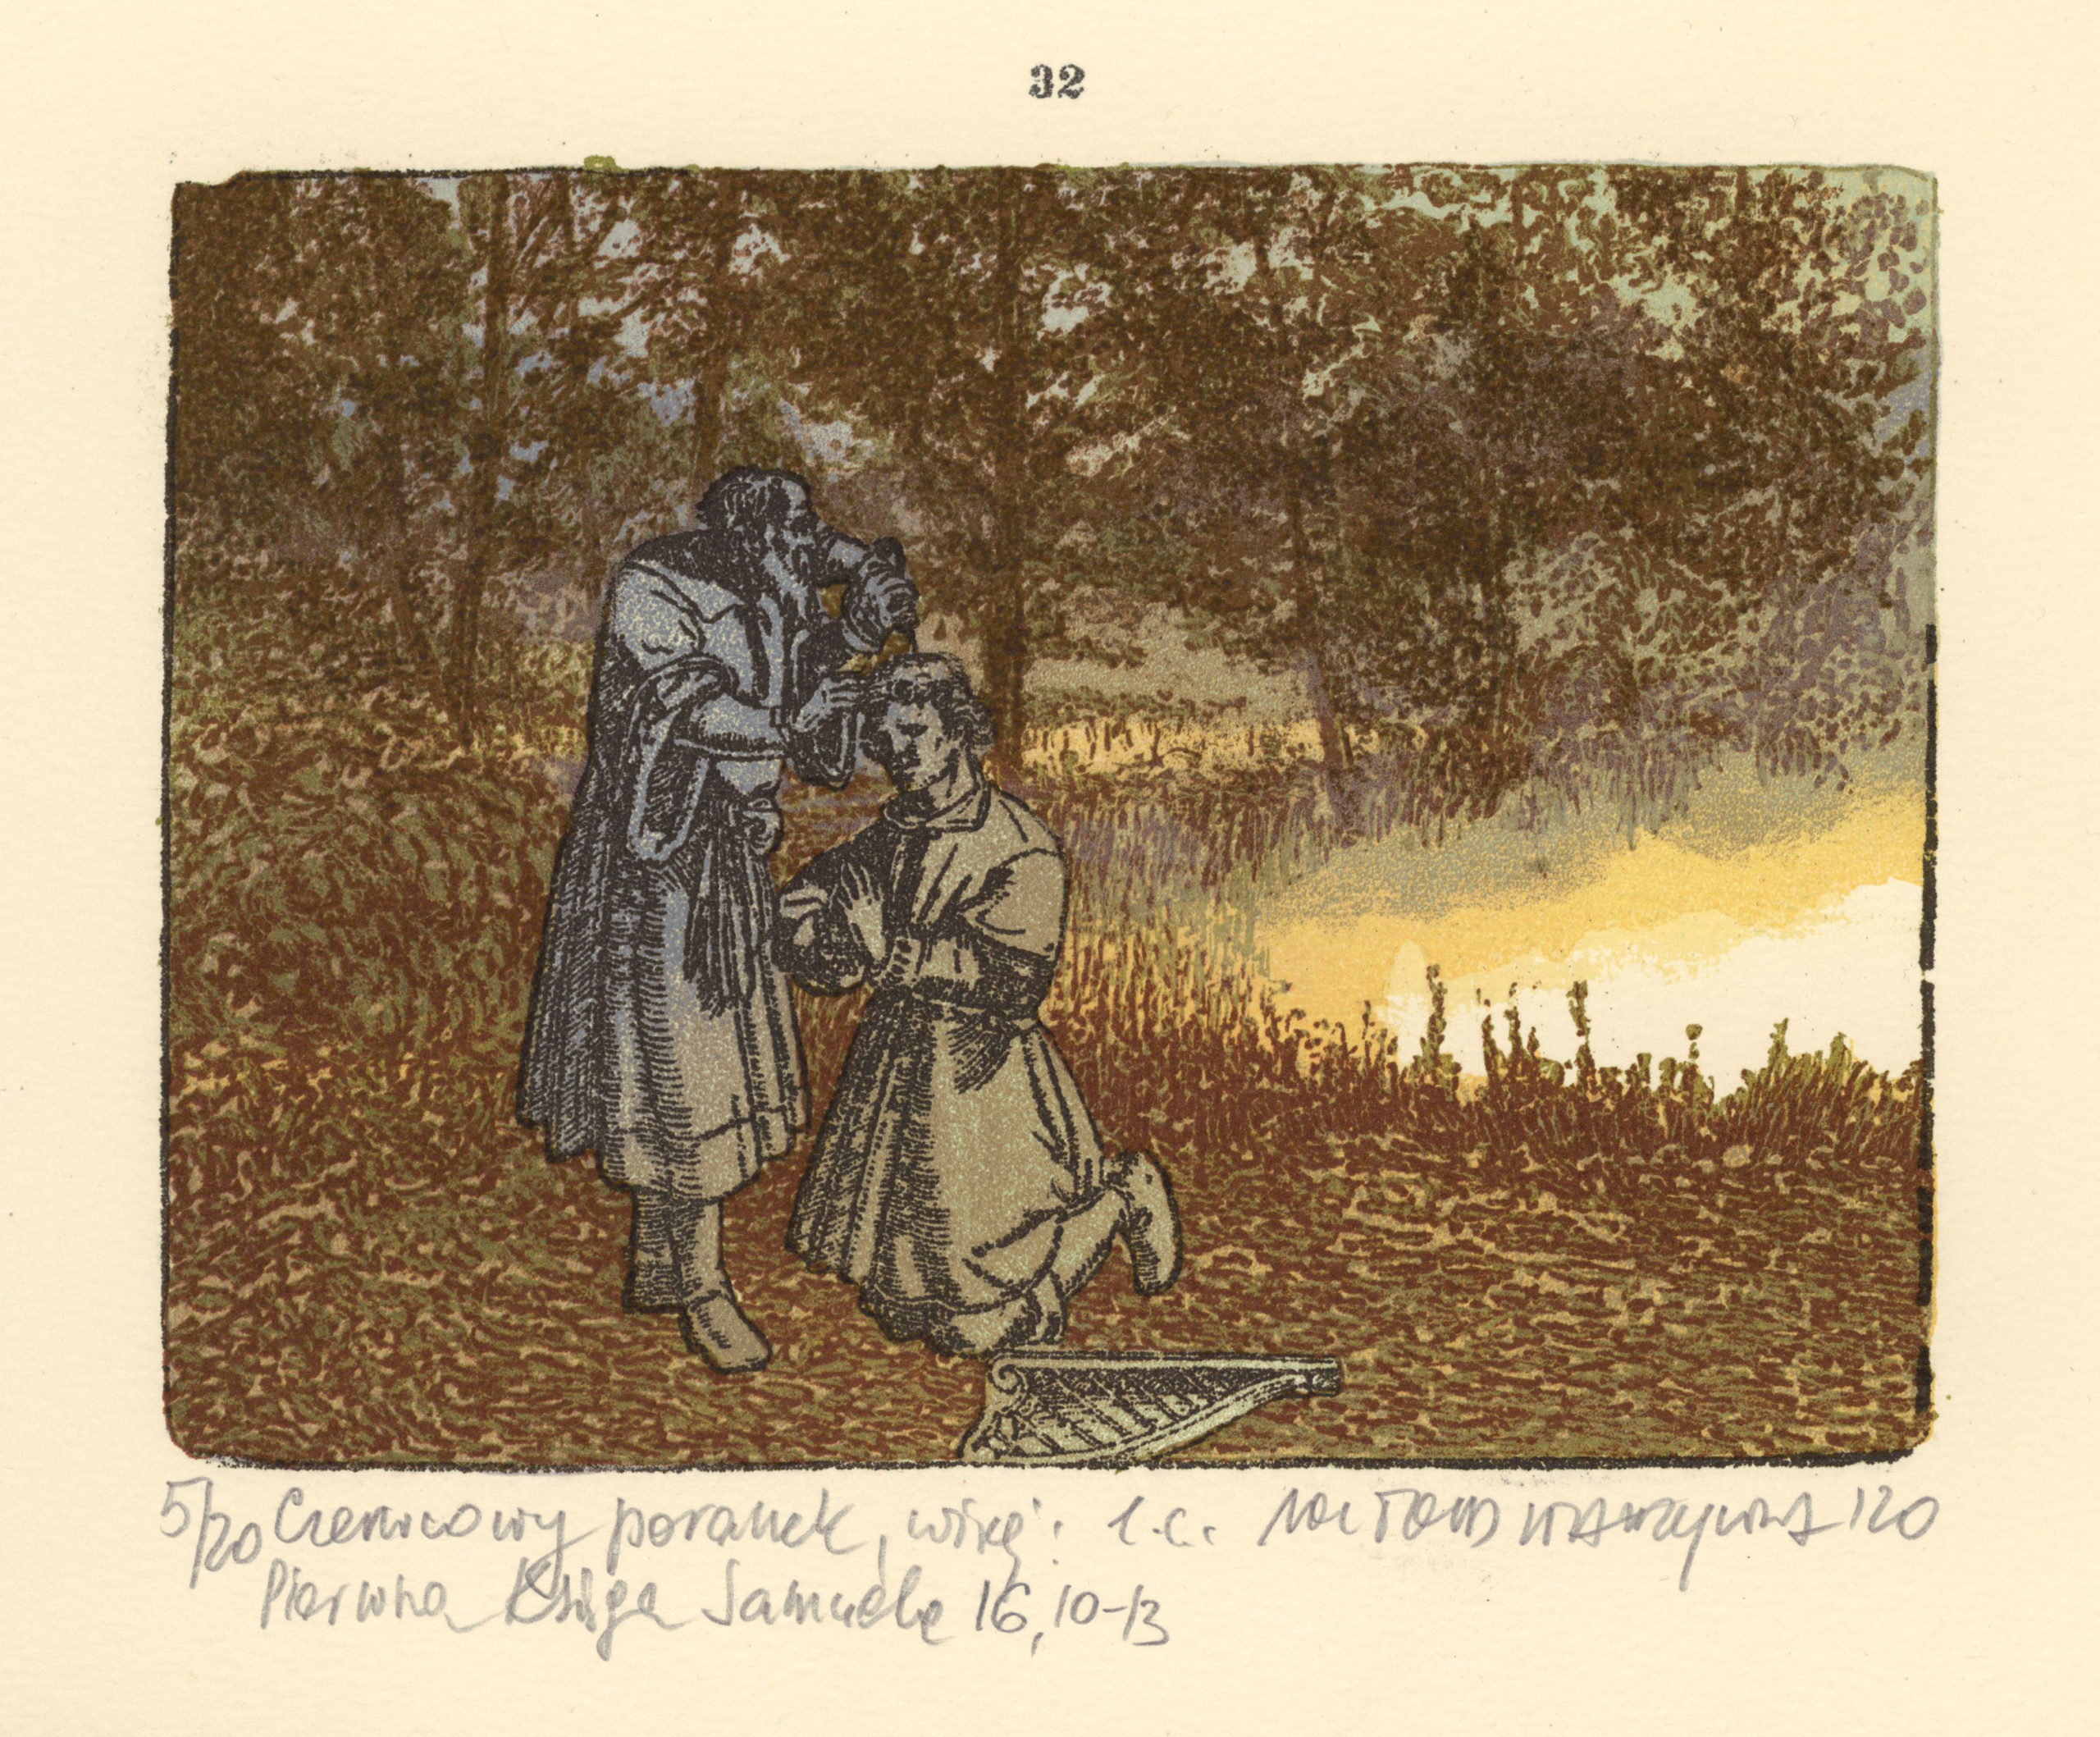 Witold Warzywoda, Czerwcowy poranek, więcej Pierwsza Księga Samuela 16,10-13, litografia barwna, 10,9 x 14,8 cm, 2020